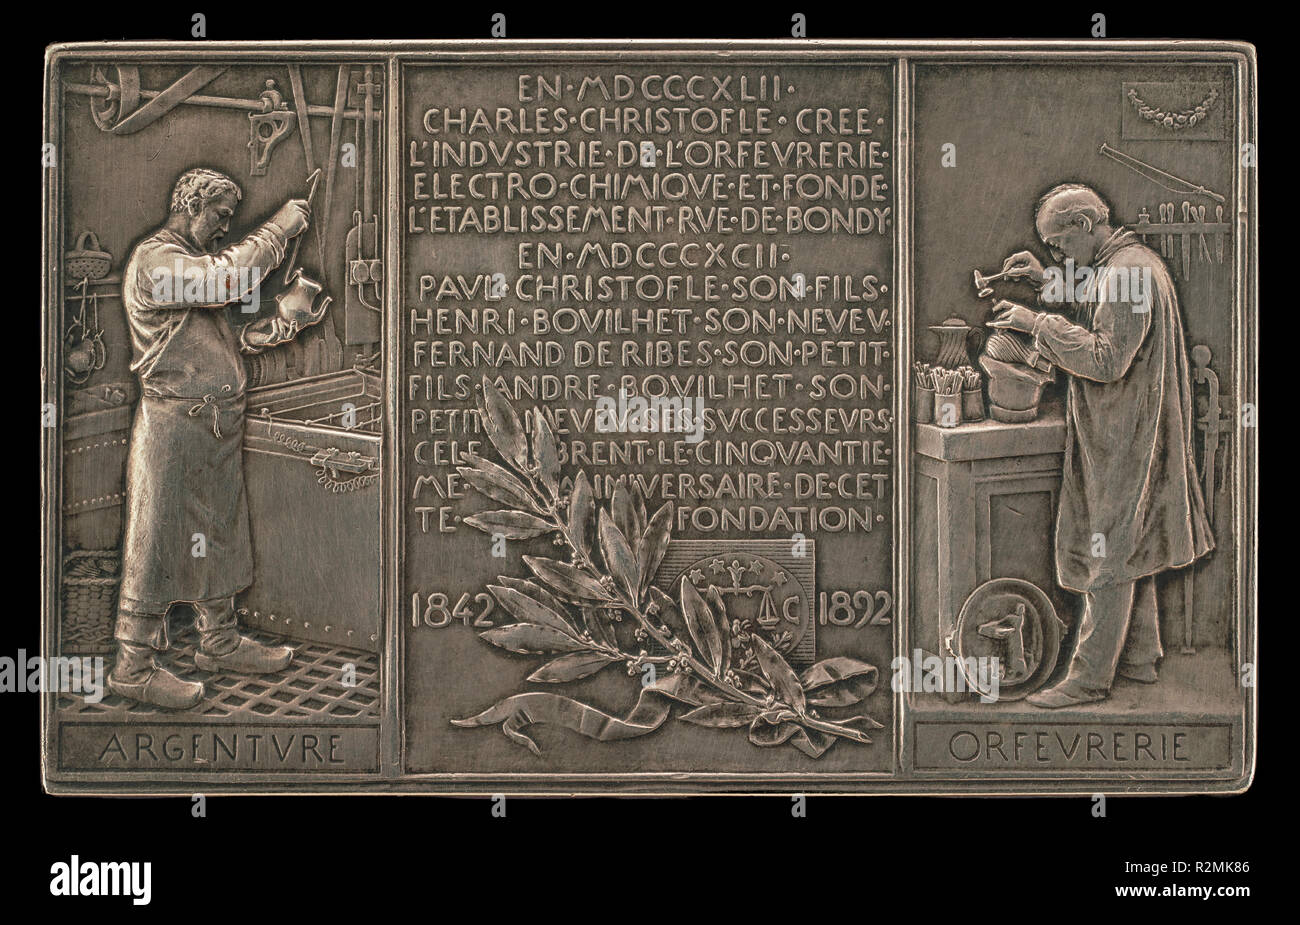 Cinquantième anniversaire de l'entreprise Christofle, 1842-1892 [AR]. En date du : 1892. Dimensions : hors tout : 6 x 9,4 cm (2 3/8 x 3 11/16 in.). Technique : bronze argenté. Musée : National Gallery of Art, Washington DC. Auteur : Louis-Oscar Roty. Banque D'Images